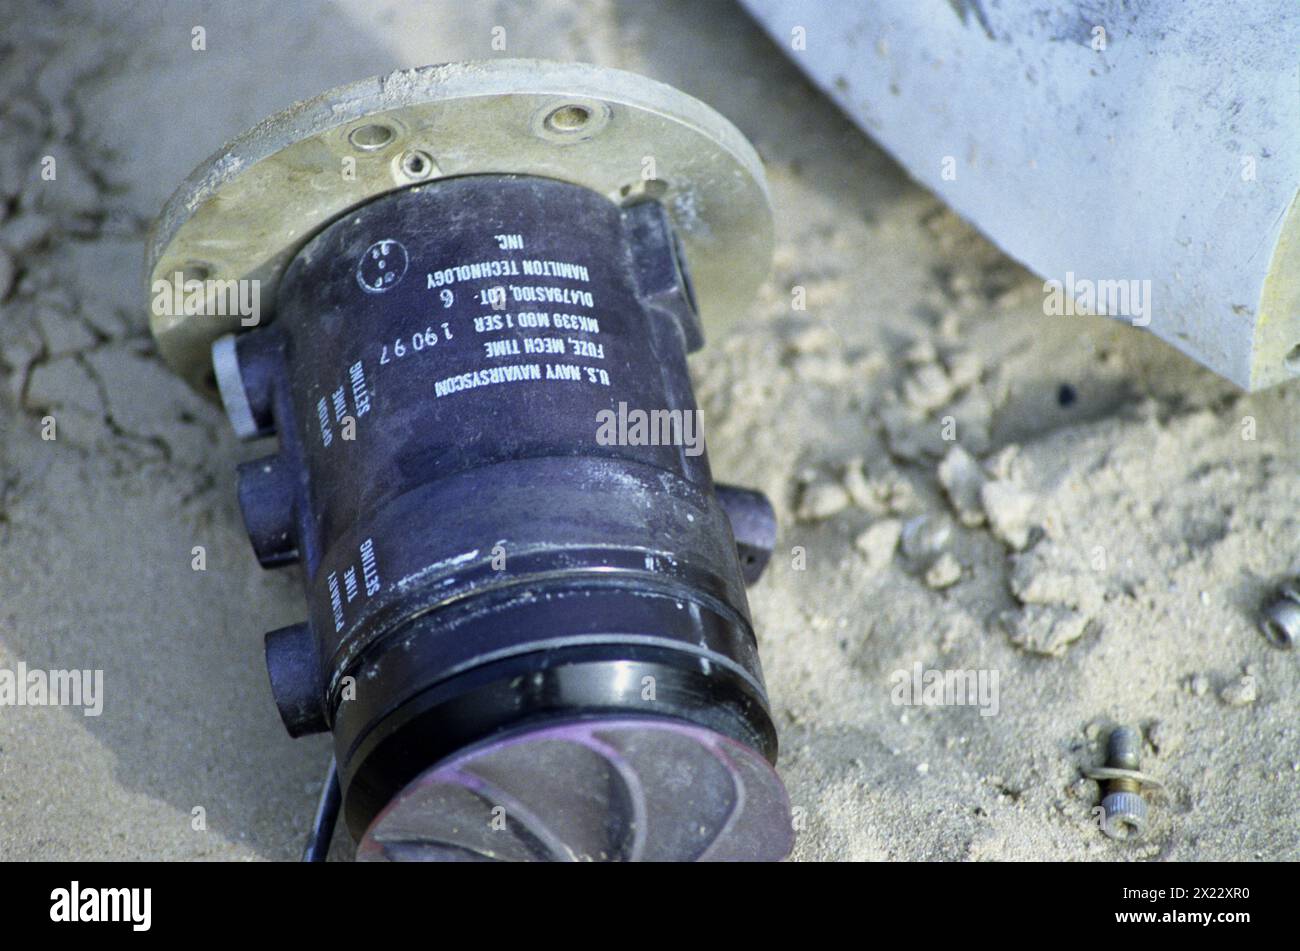 1er avril 1991 un fusible américain Mk 339 Mod 1 d'une bombe à grappes CBU-100 (Mk-20 Rockeye), sur la 'Highway of Death', à l'ouest de Kuwait City sur la route principale menant à Bassorah. Banque D'Images